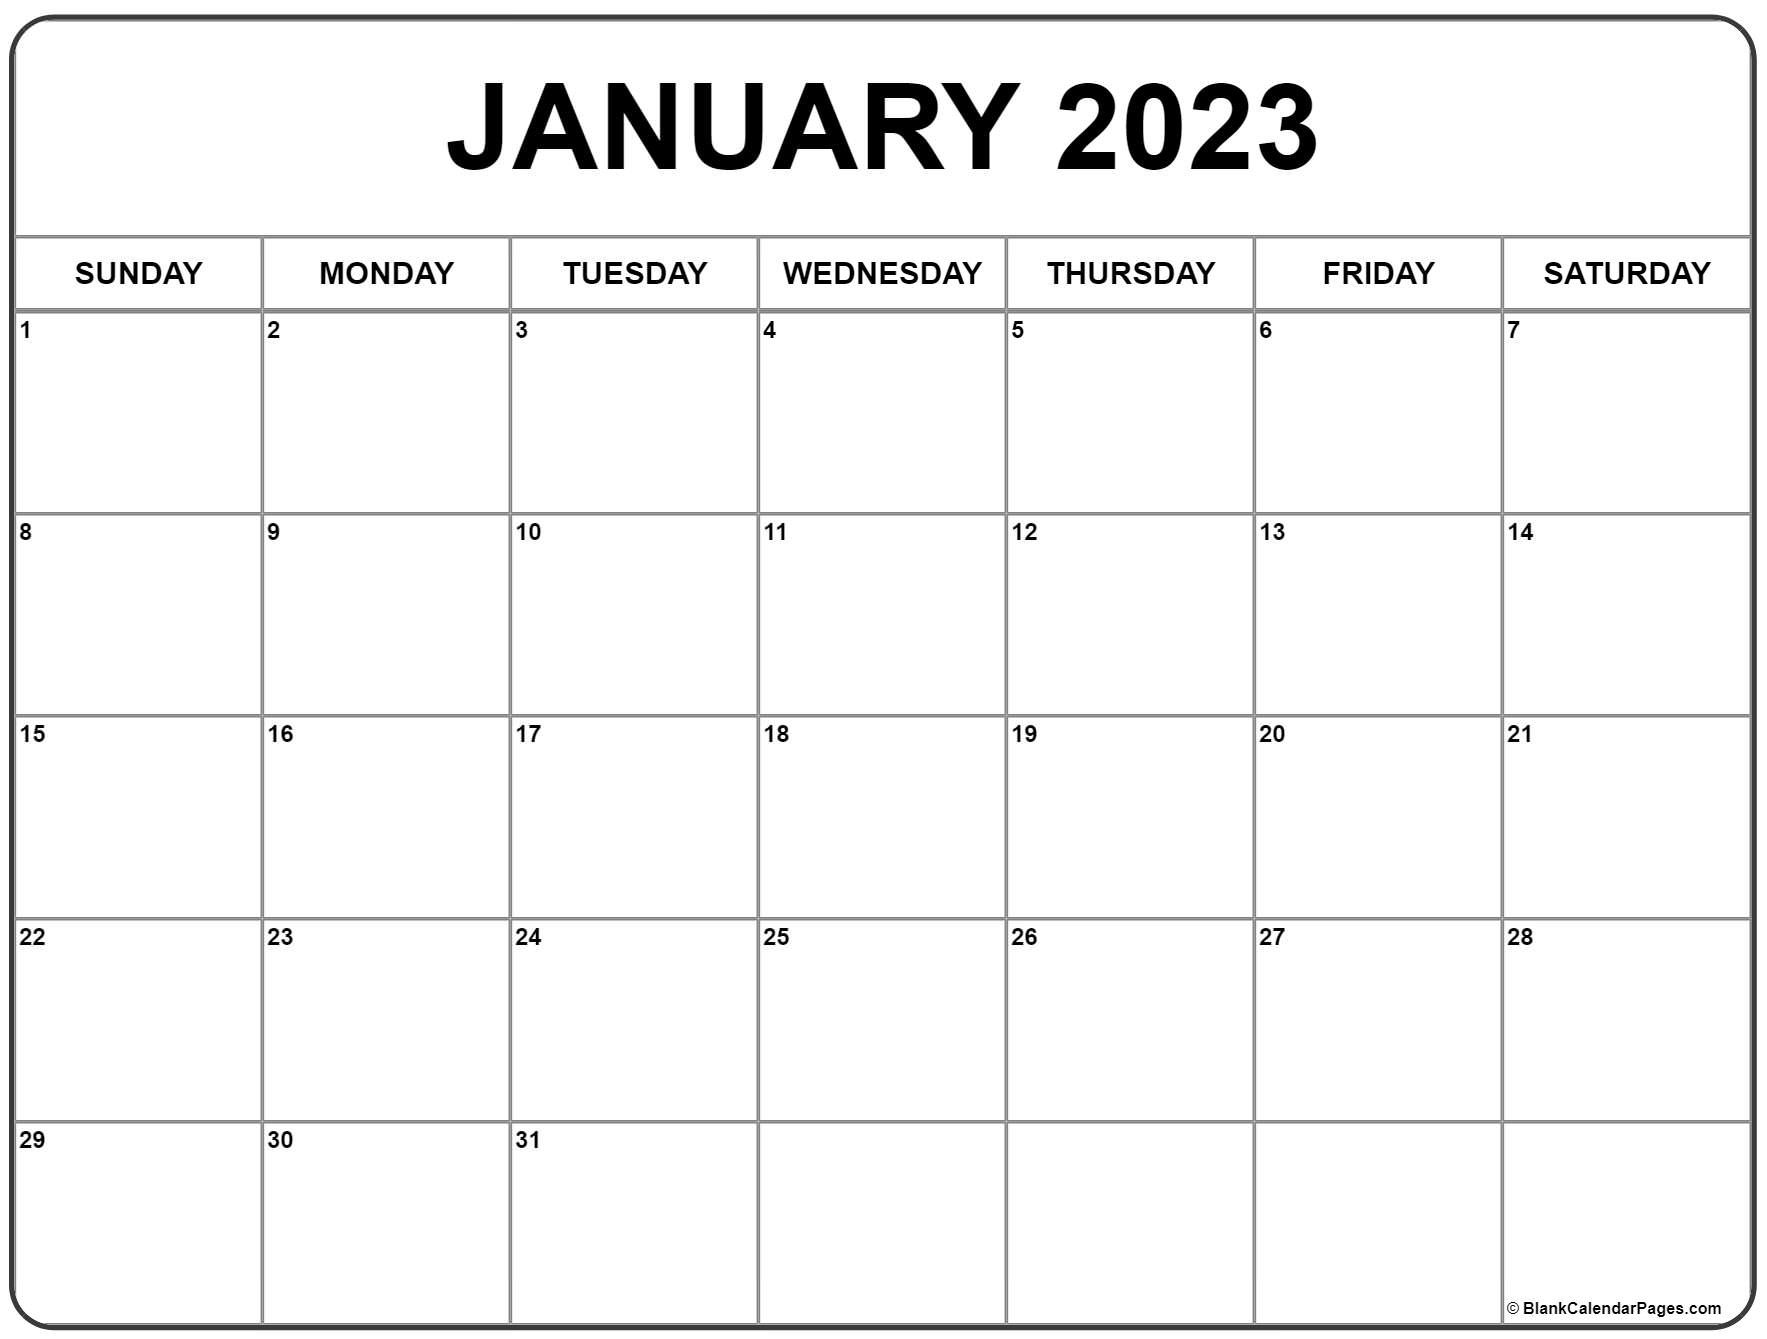 january-2023-blank-calendar-template-2022-freeblankcalendar